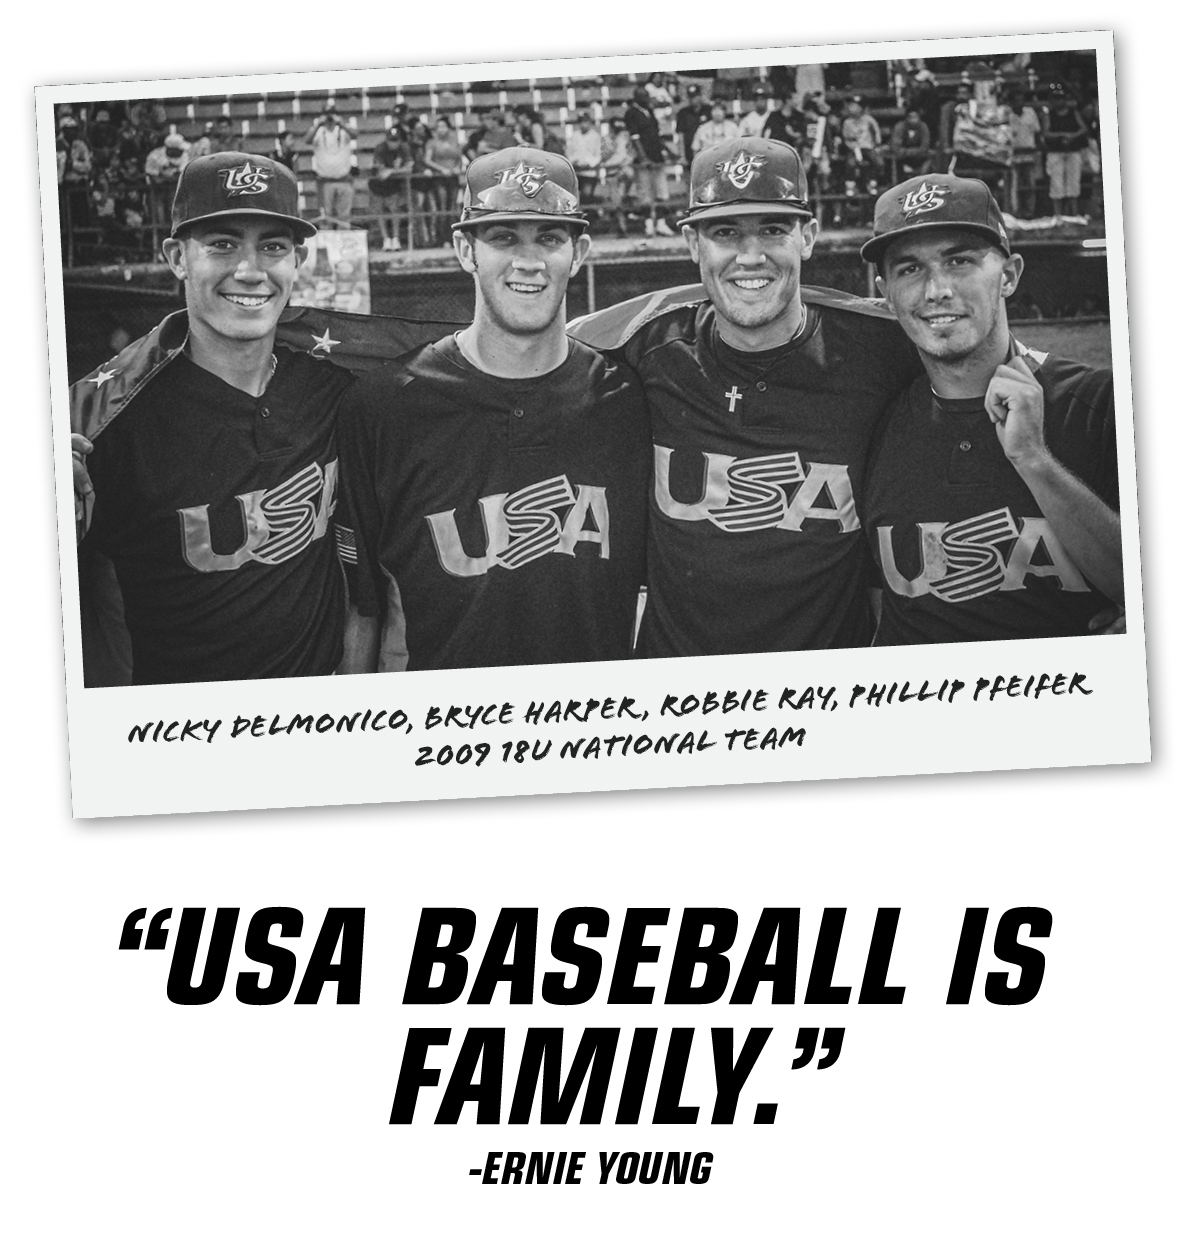 "USA Baseball is family."